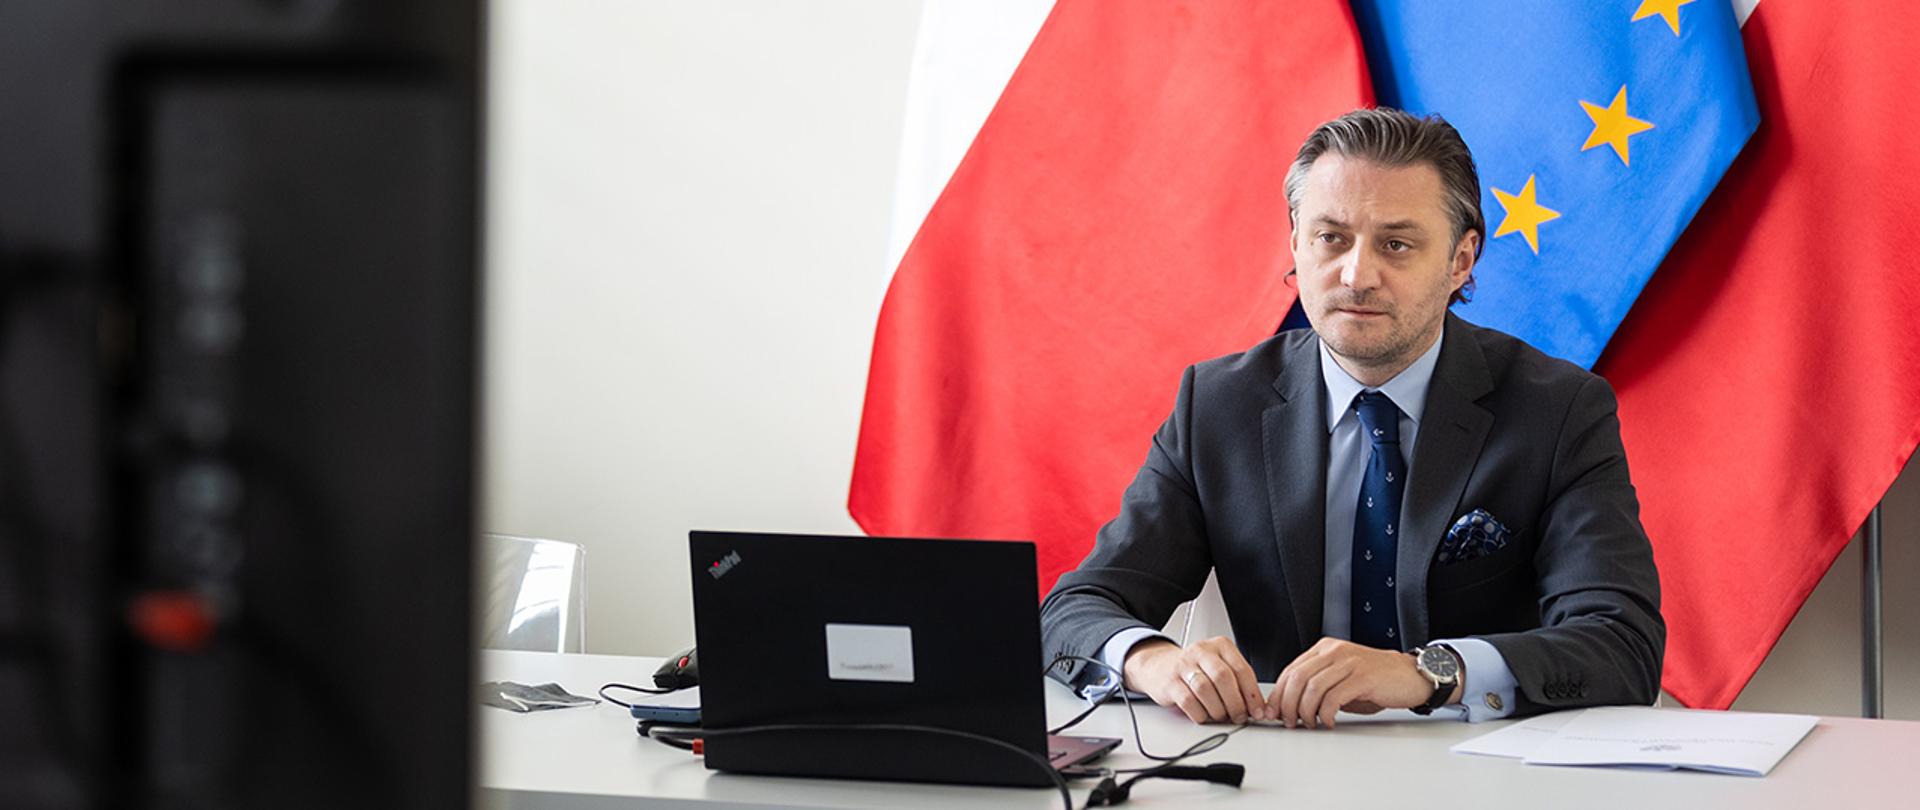 Na zdjęciu widać wiceministra Bartosza Grodeckiego siedzącego za stołem, przed ekranem na tle flag Polski i UE.